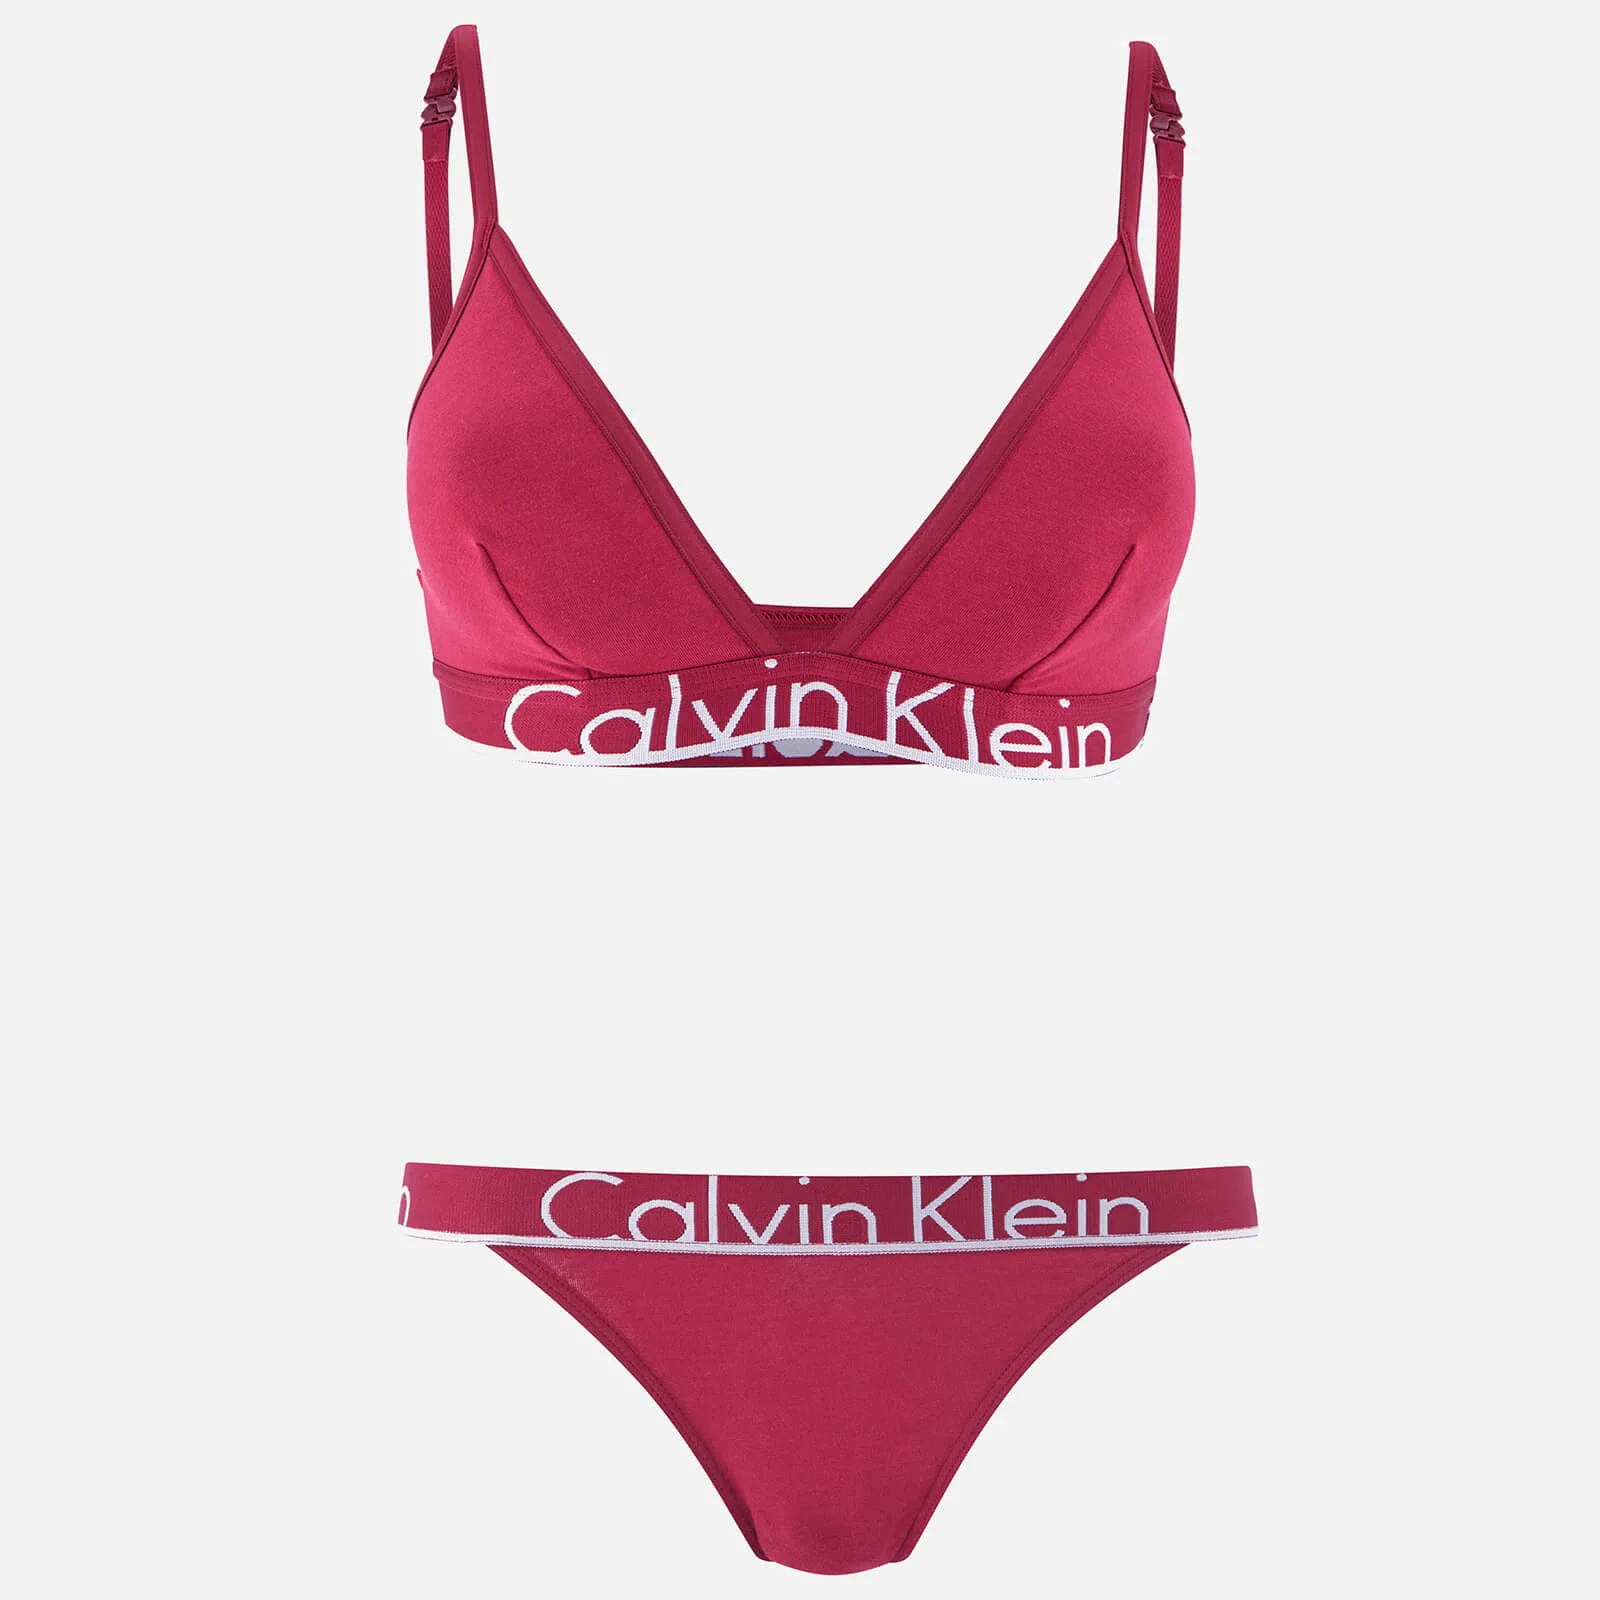 Calvin Klein Women's Underwear Gift Set - Indulge Image 1